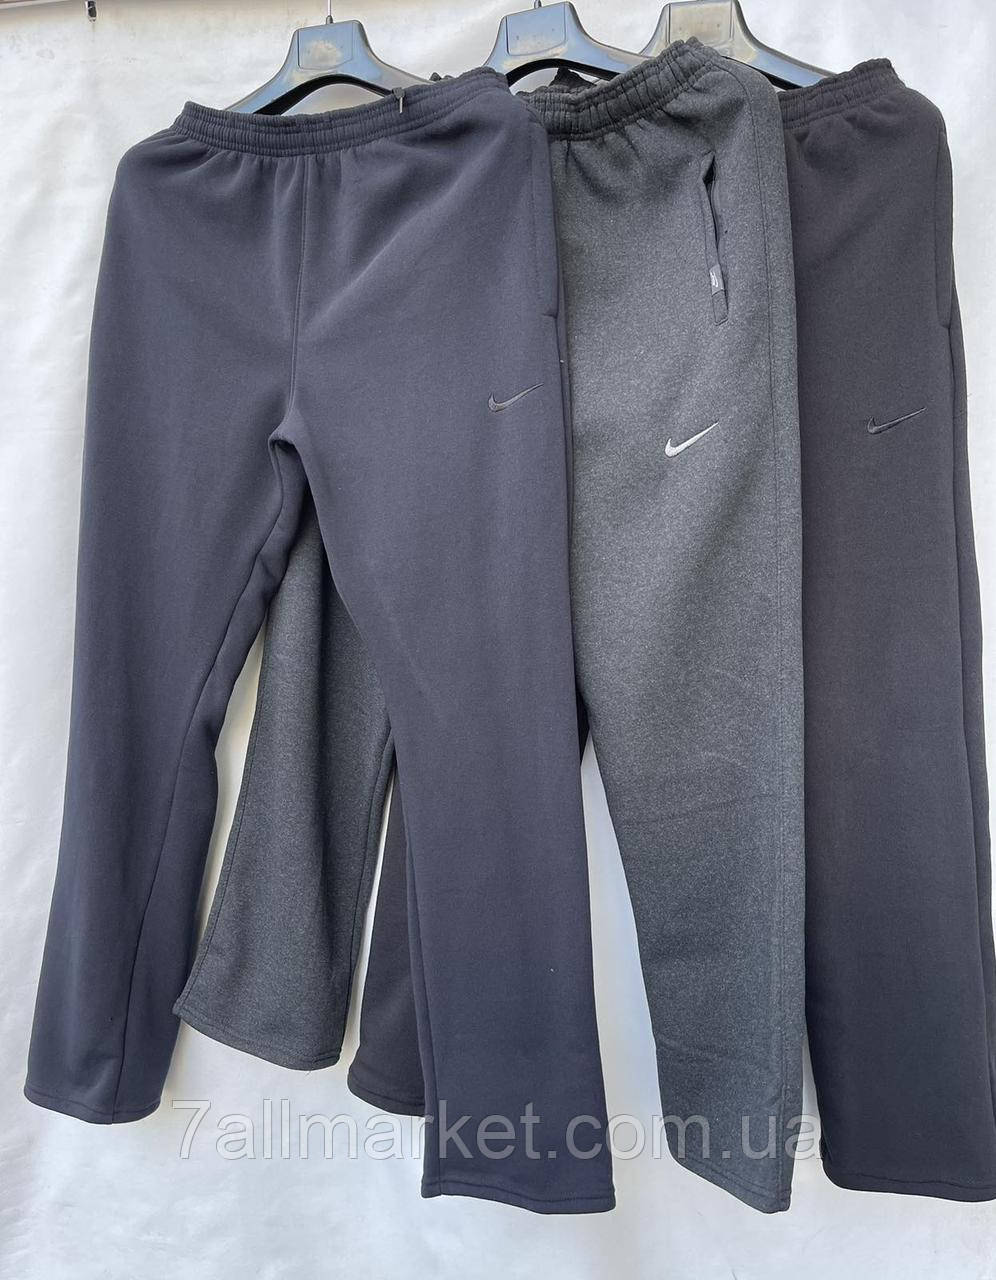 Спортивні штани чоловічі на флісі прямі NIKE р-ри 46-54 (3цв) "TRIUMF" недорого від прямого постачальника